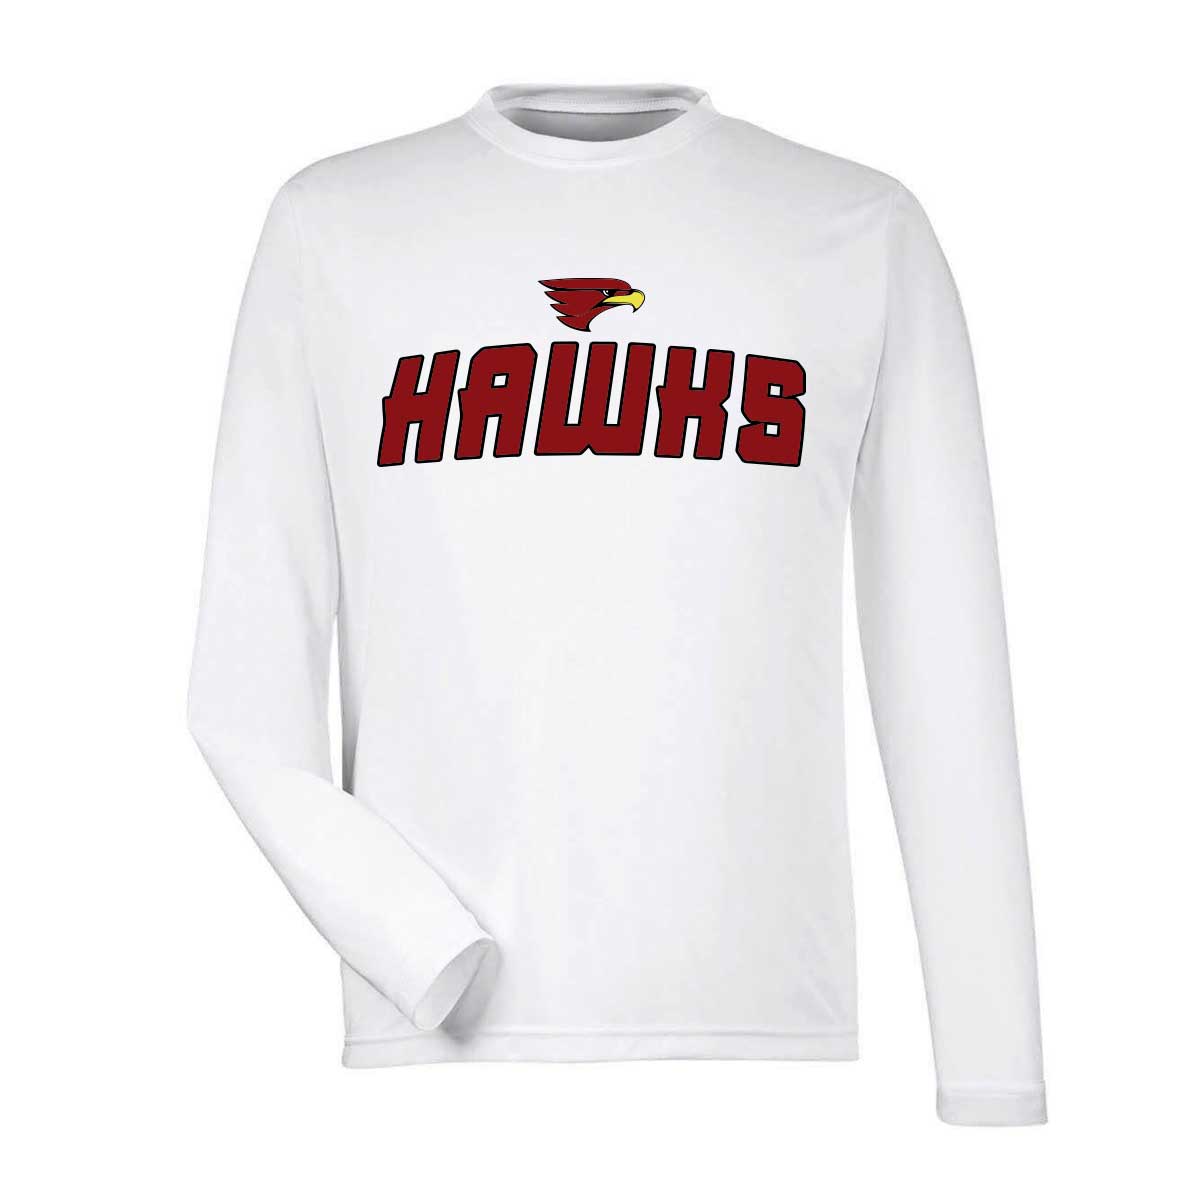 Hawks Basketball Shooting Shirt